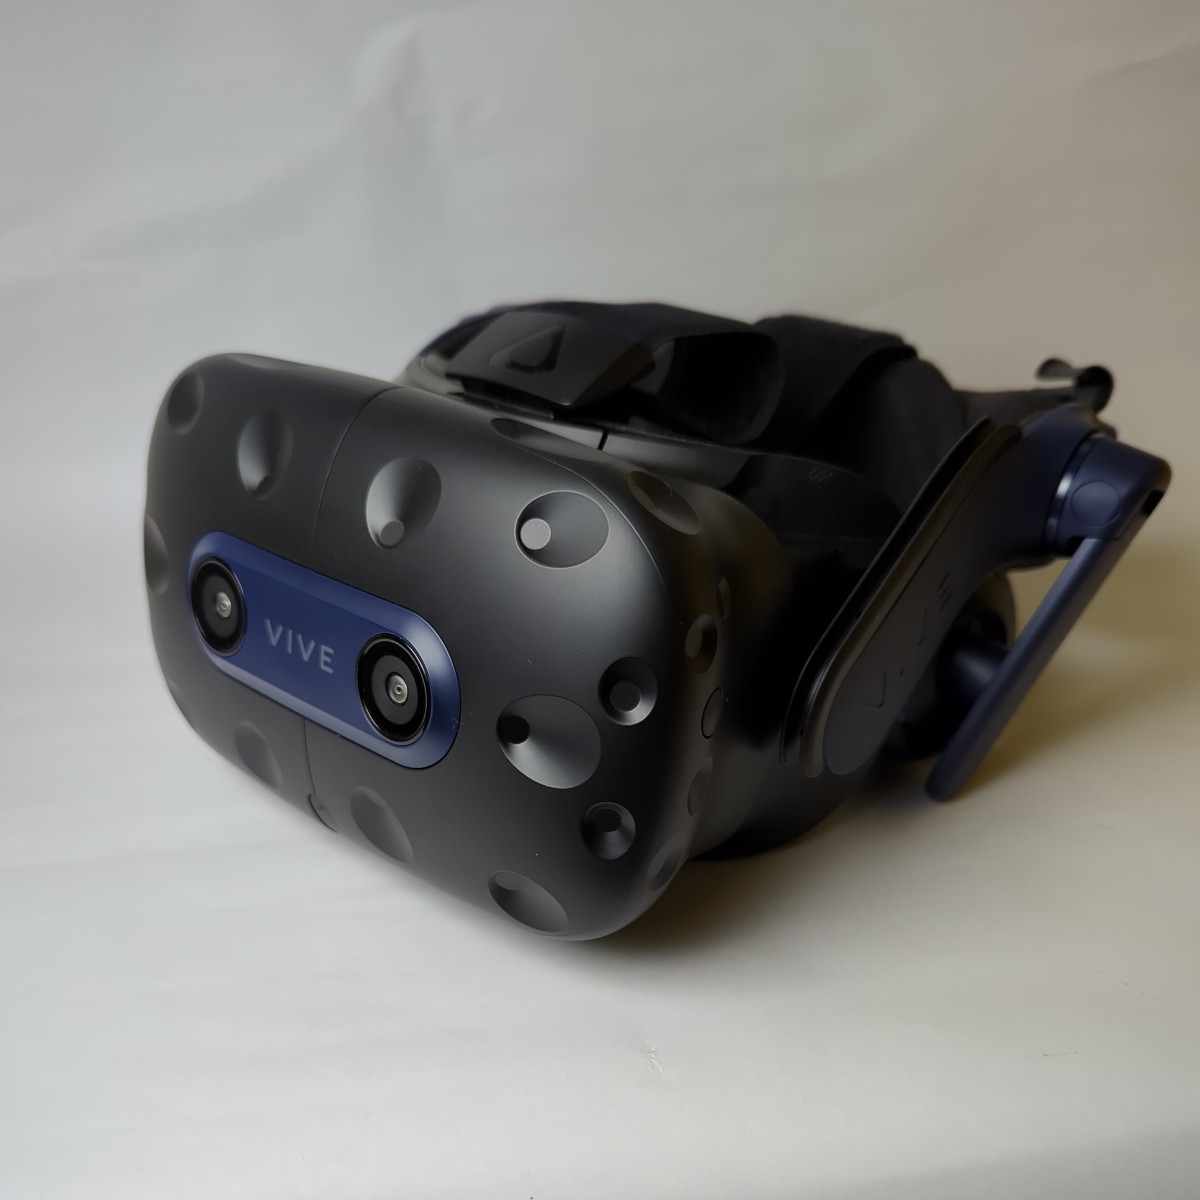 ほぼ新品 HTC VIVE PRO 2 HMD VR ヘッドマウントディスプレイ